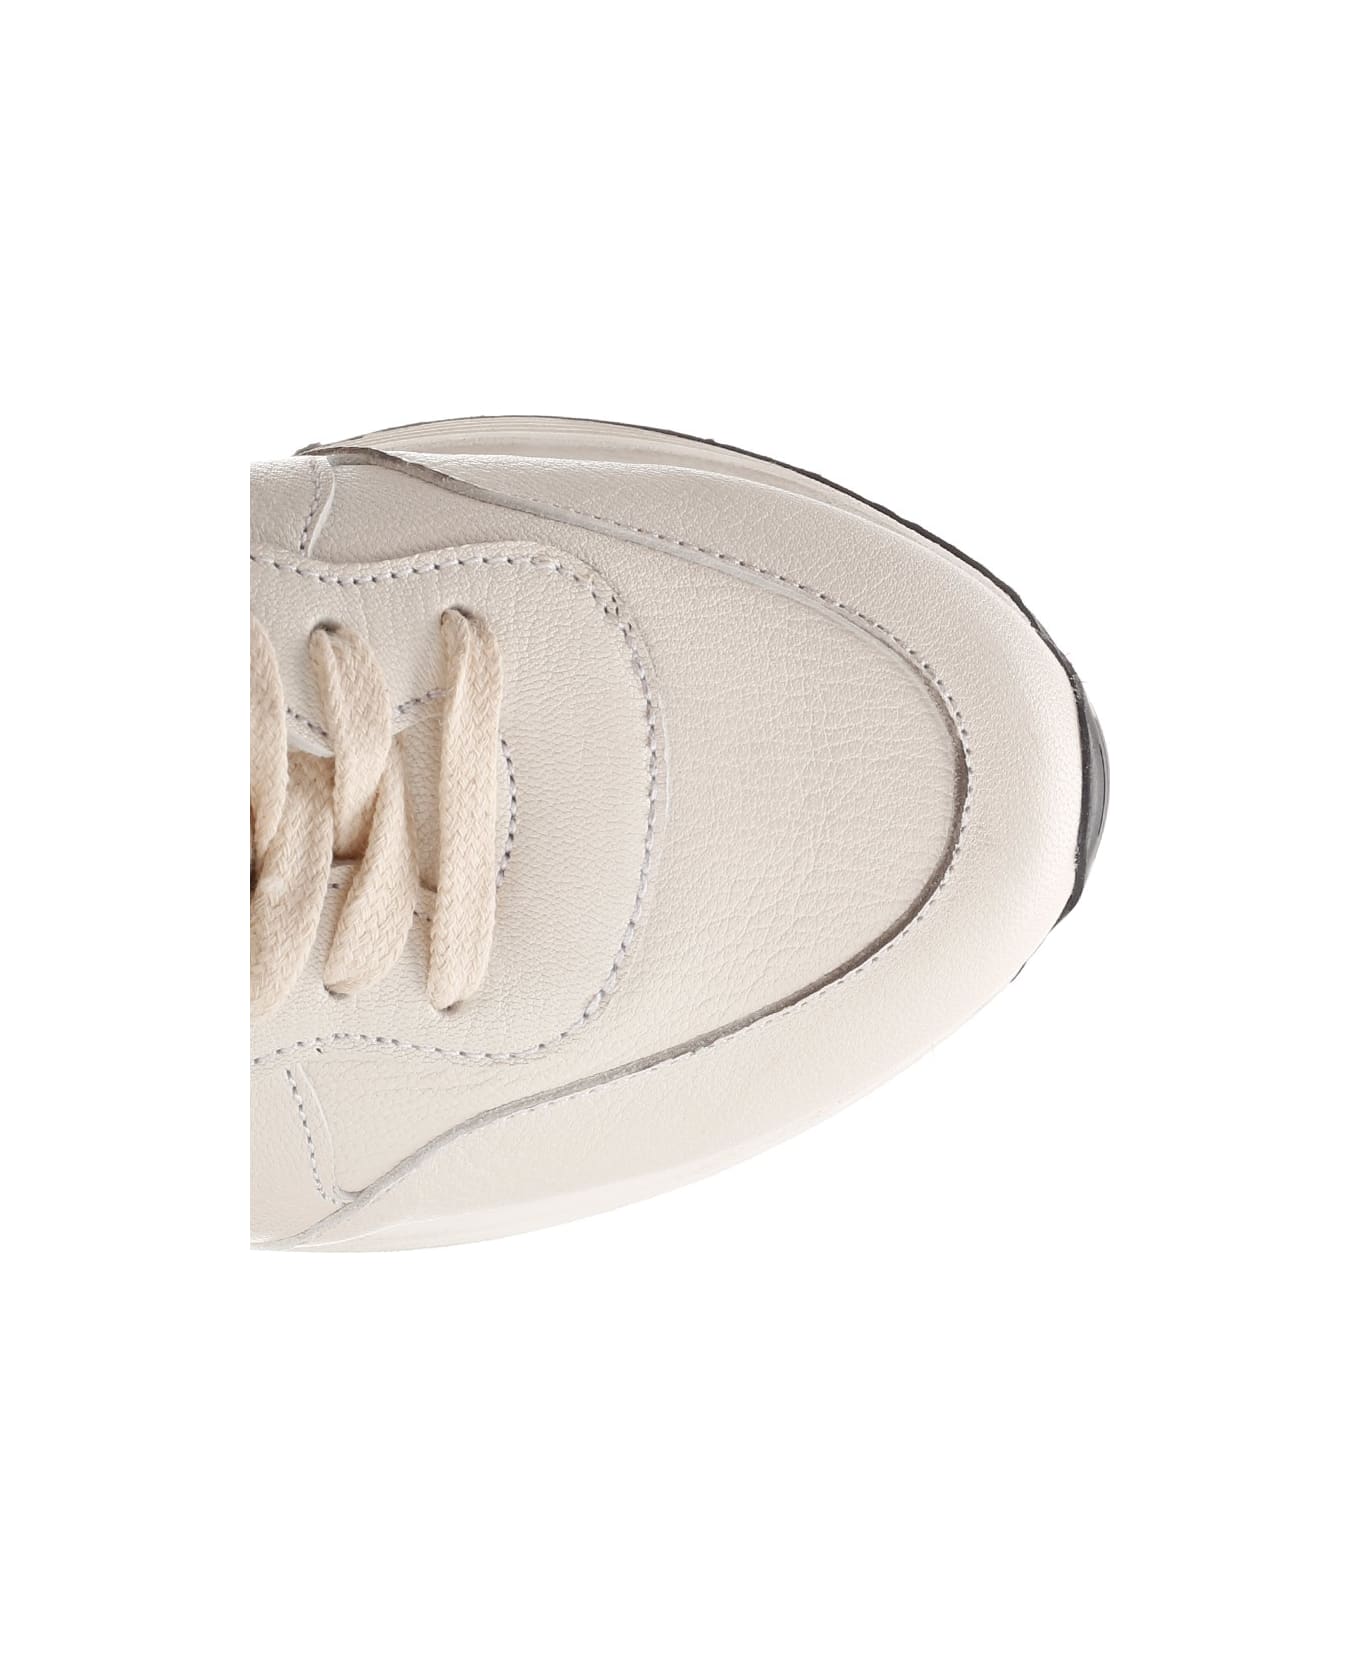 Golden Goose Running Sun Sneaker - White/taupe スニーカー